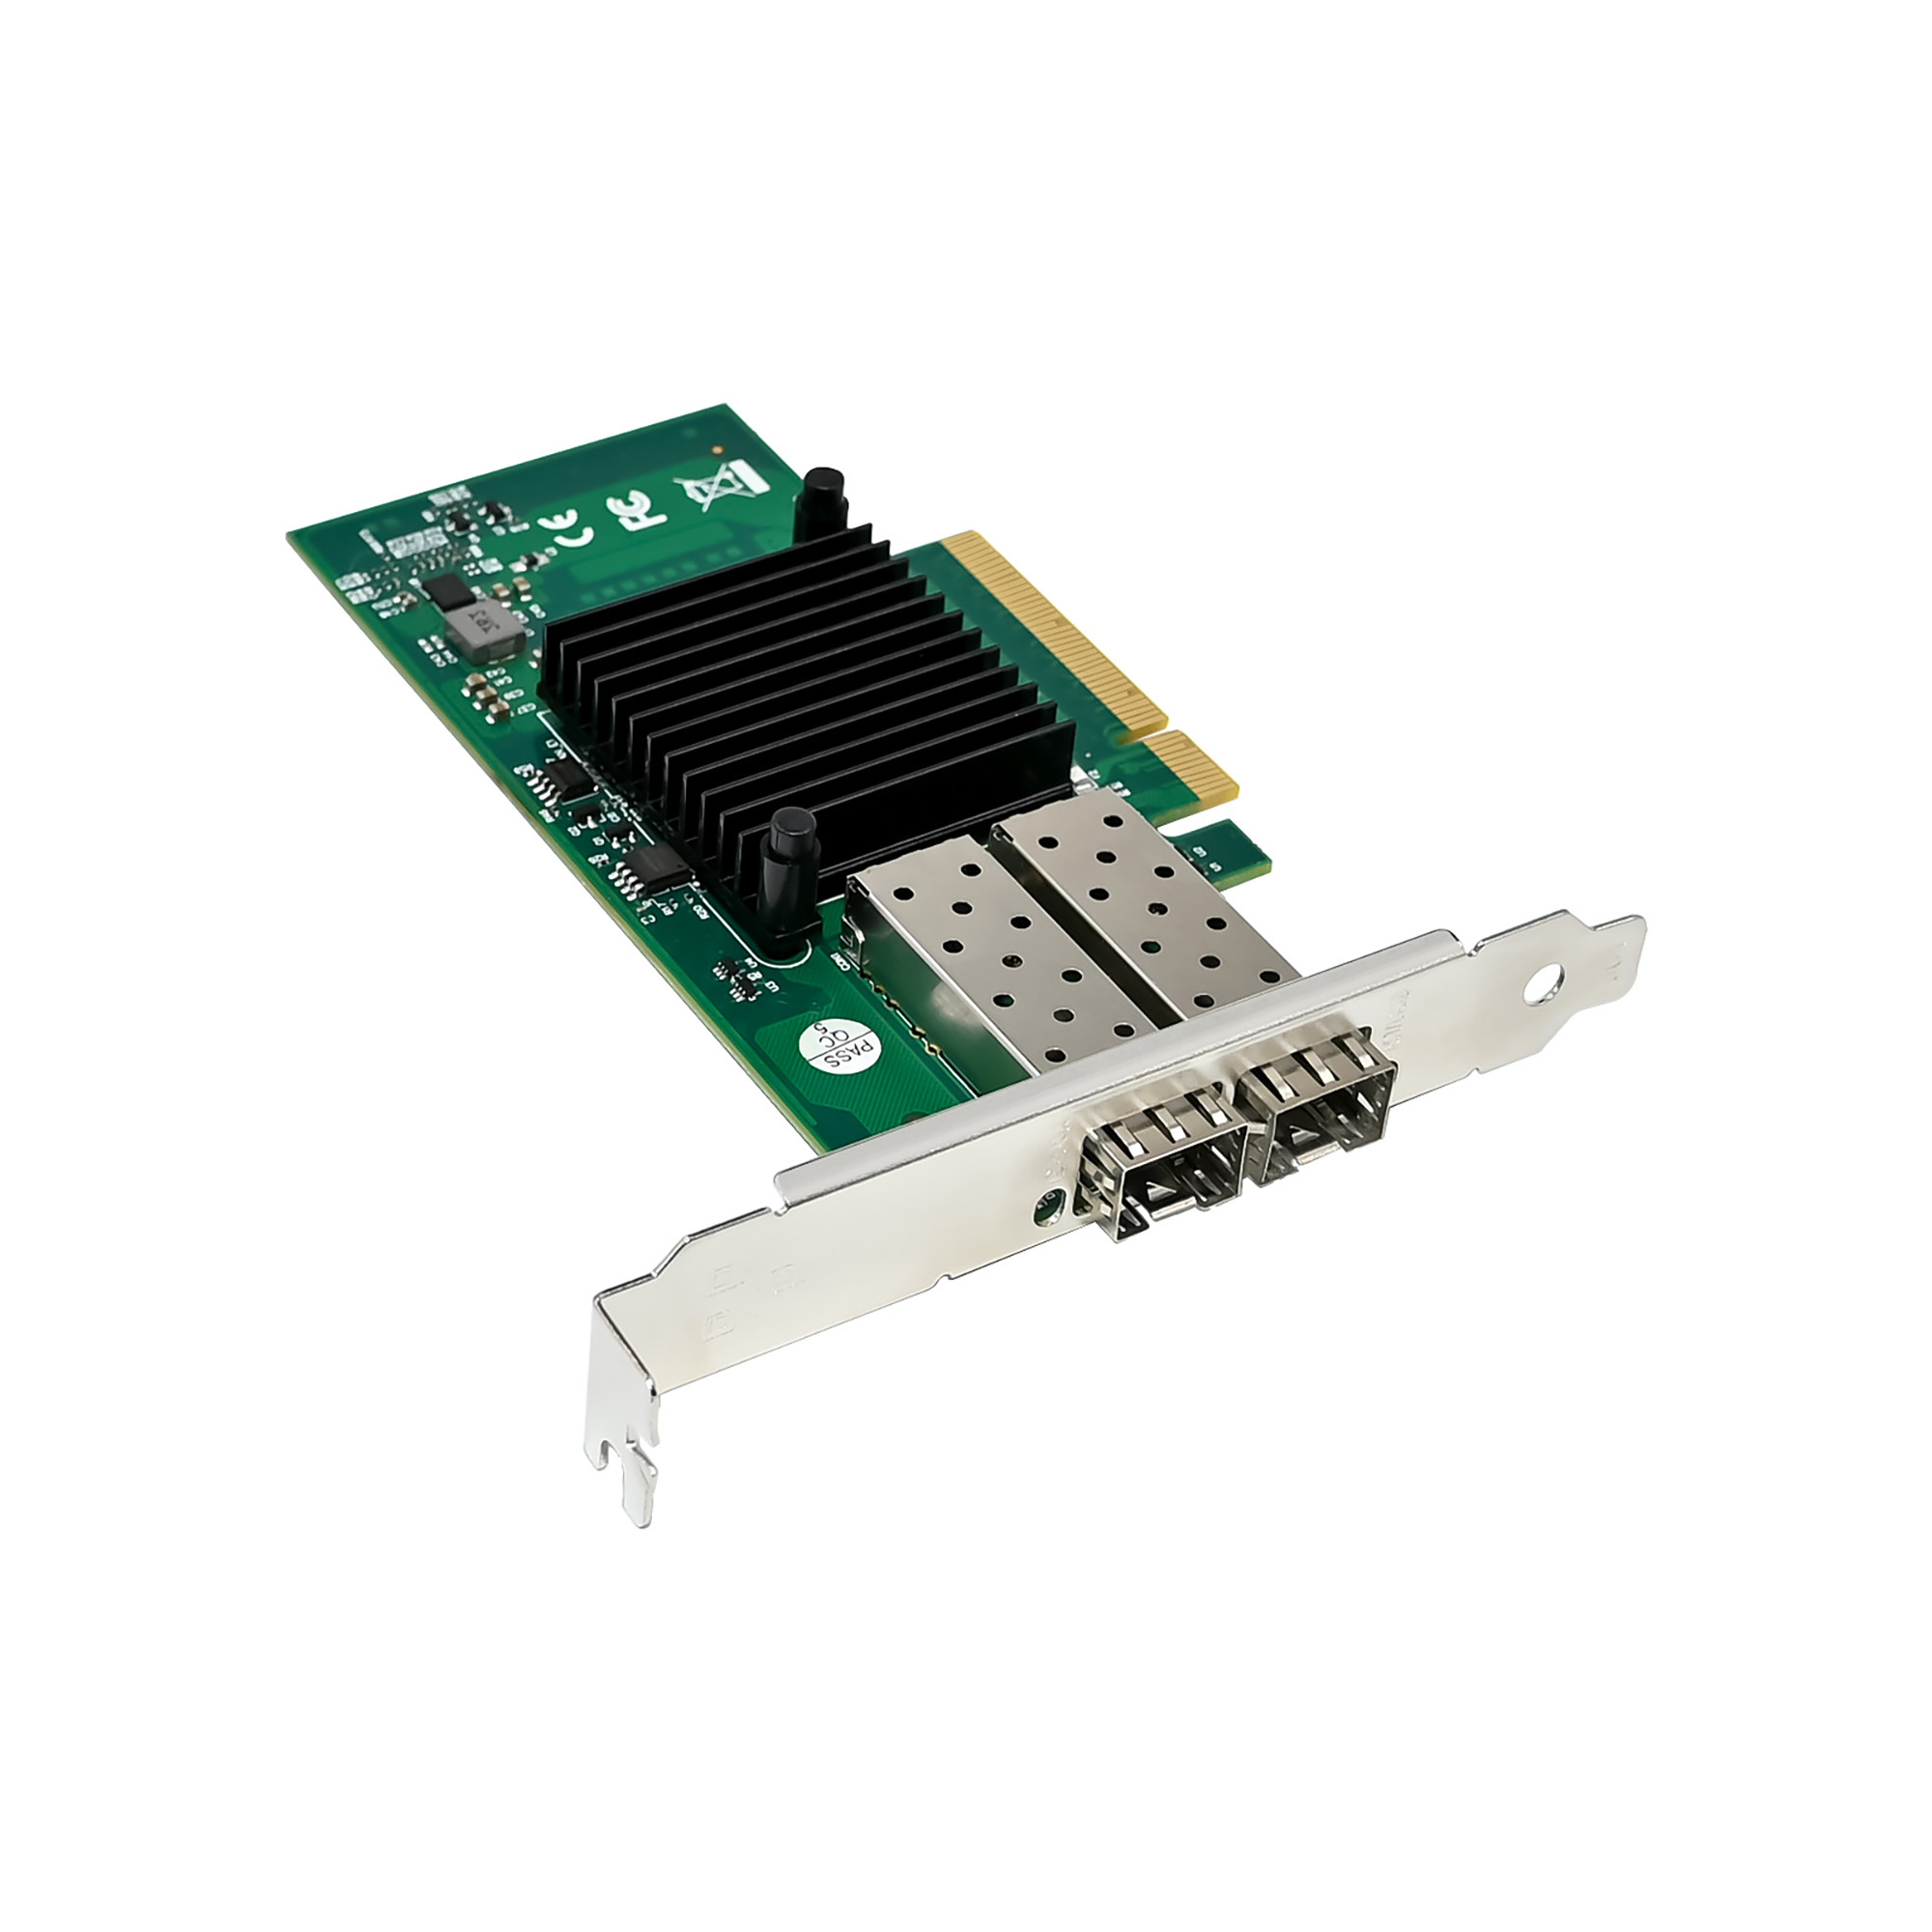 2-Port 10G Fiber Netzwerkkarte mit Open SFP+ - PCIe, Intel 82599ES